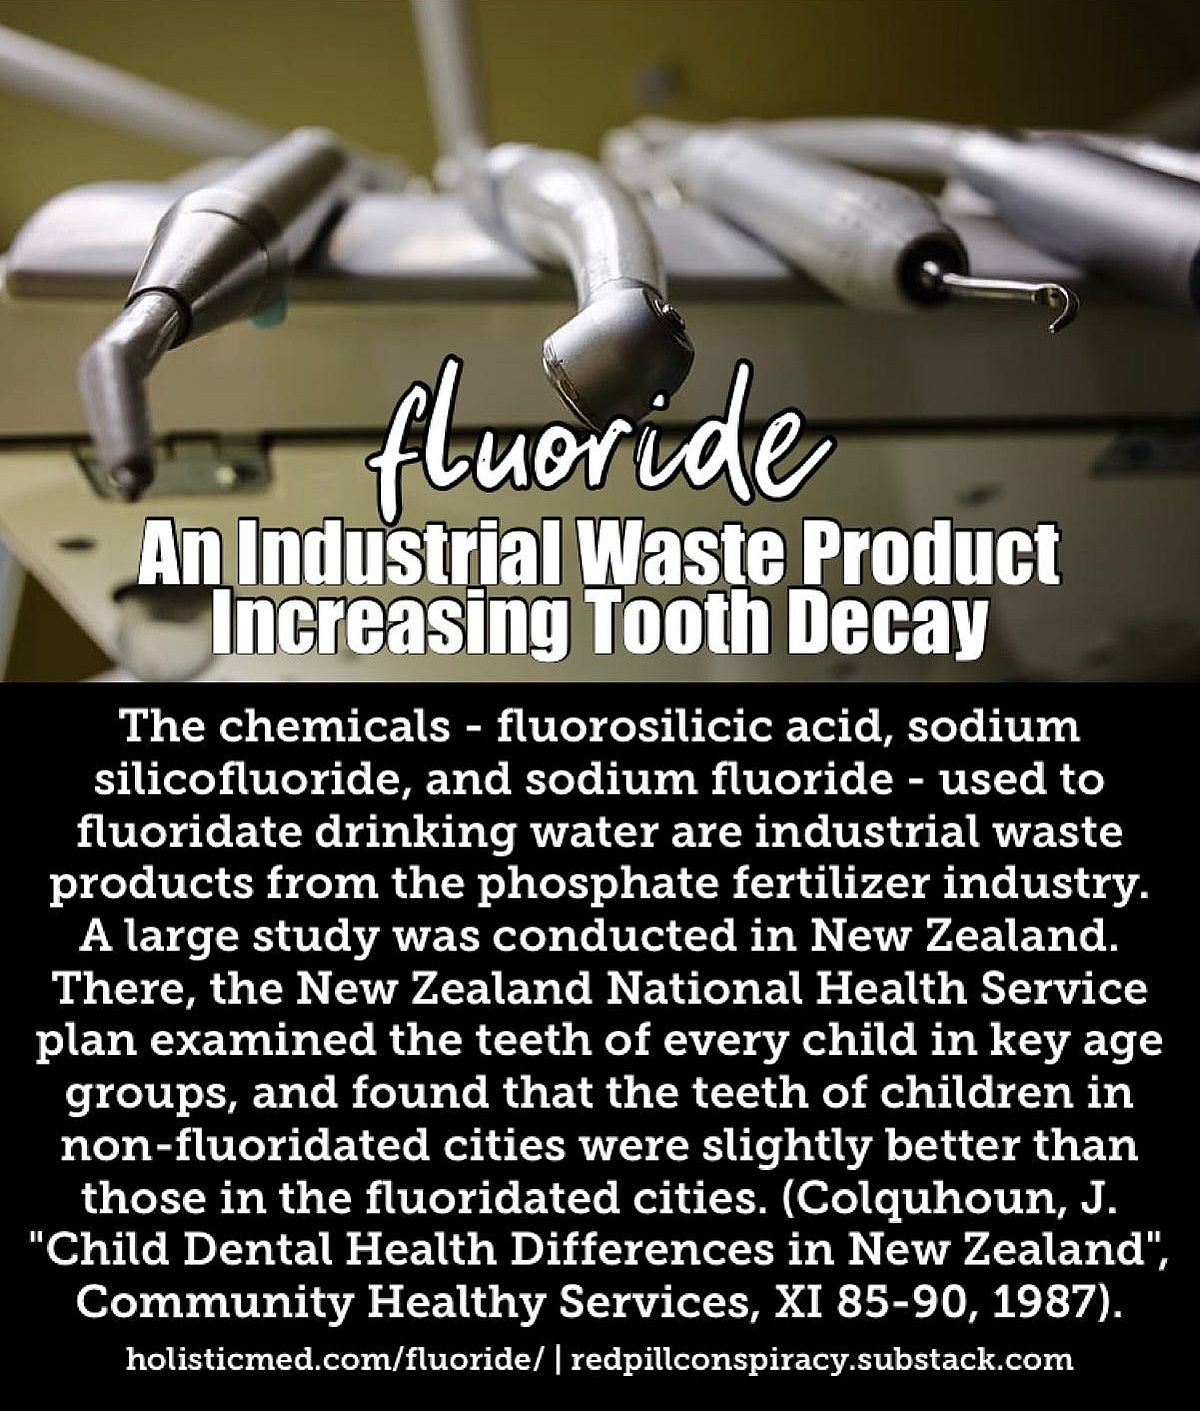 Fluori - teollisuuden jätetuote, joka edistää hampaiden reikiintymistä